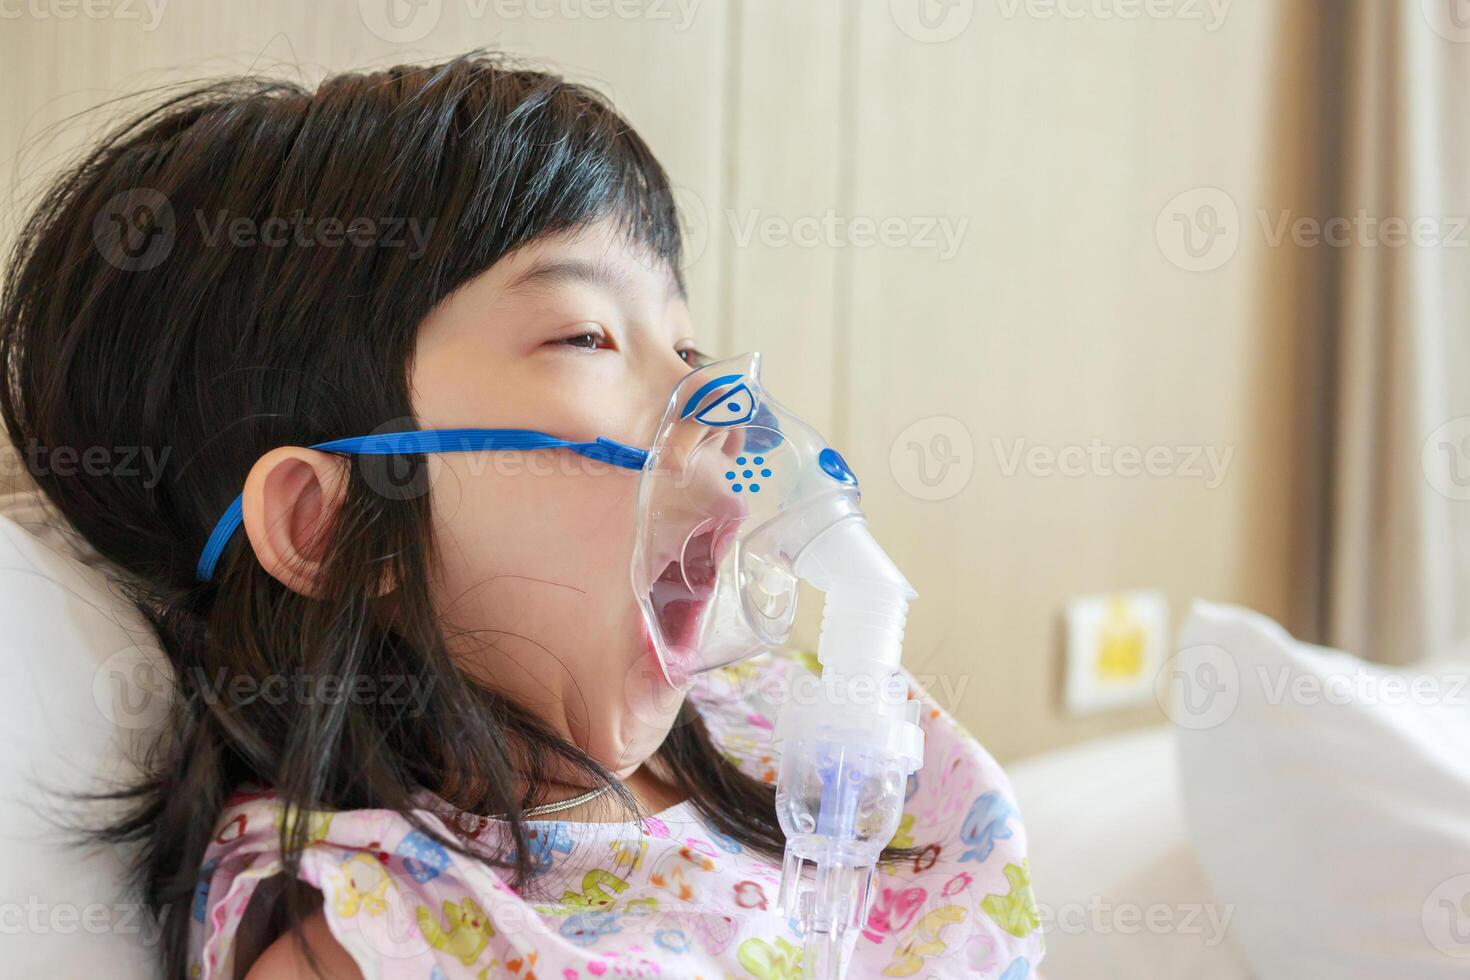 sjuk liten asiatisk flicka inandning med nebulisator för respiratorisk behandling foto